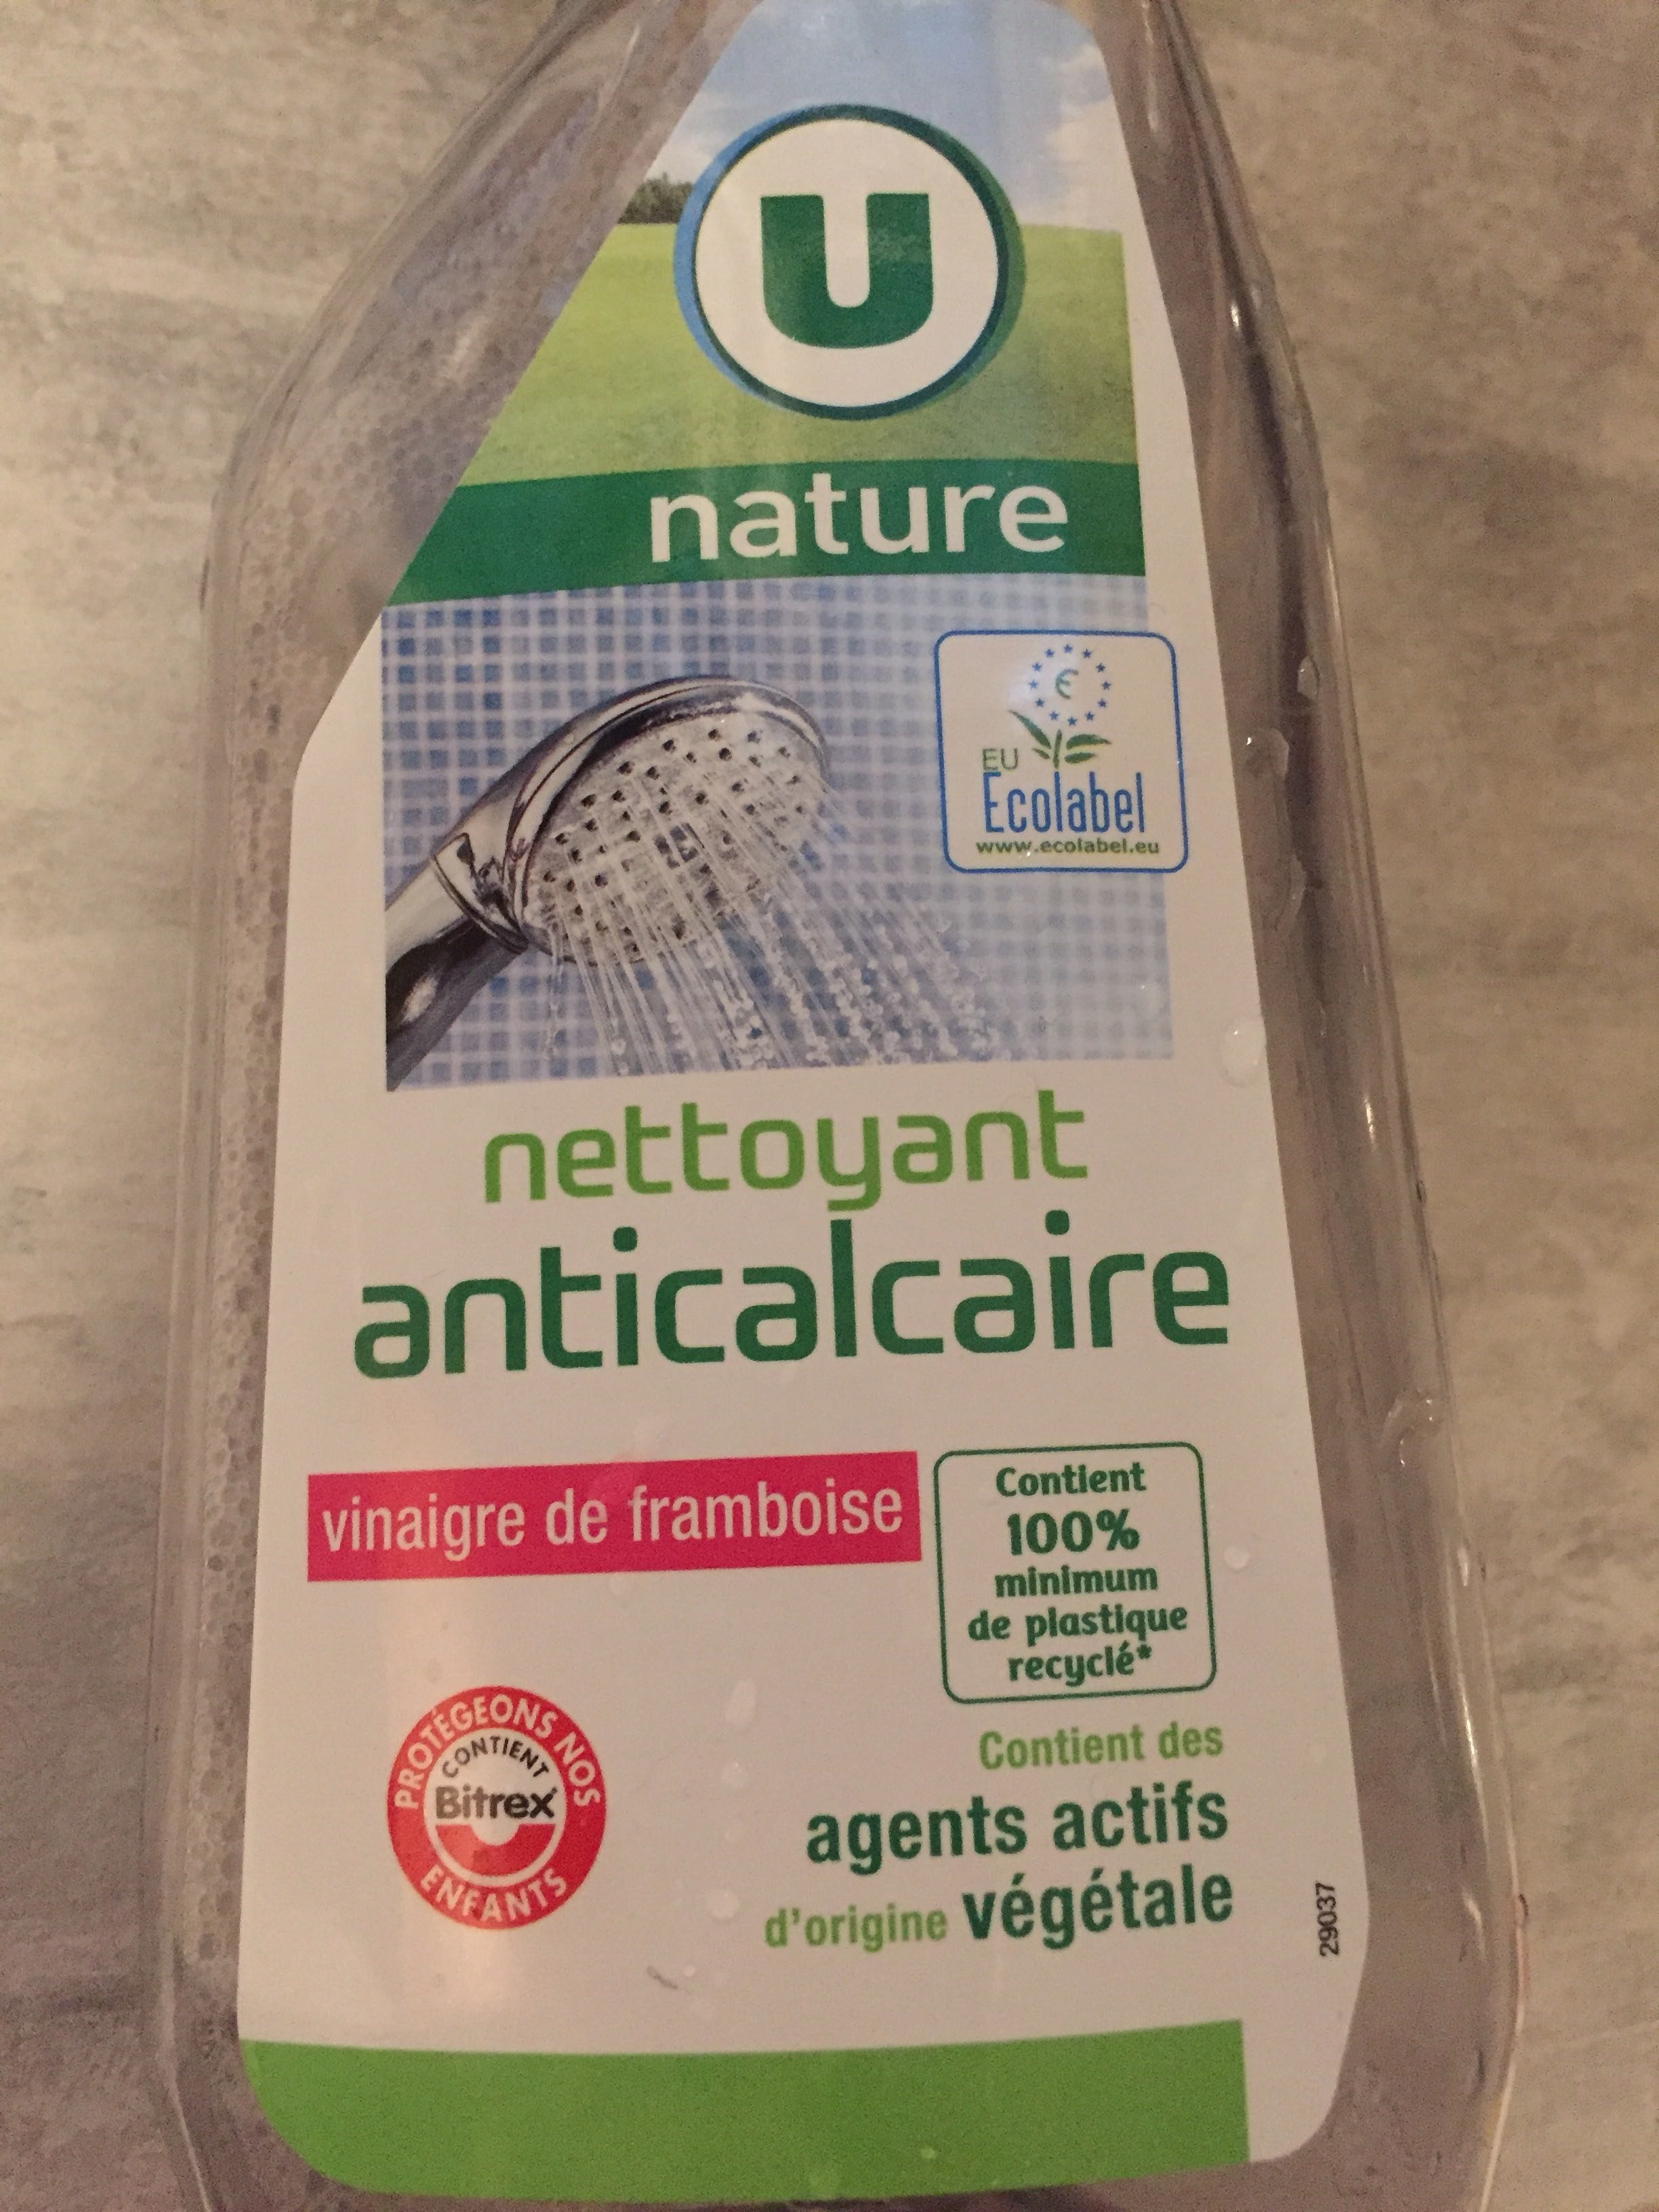 Nettoyant anticalcaire - Produit - fr